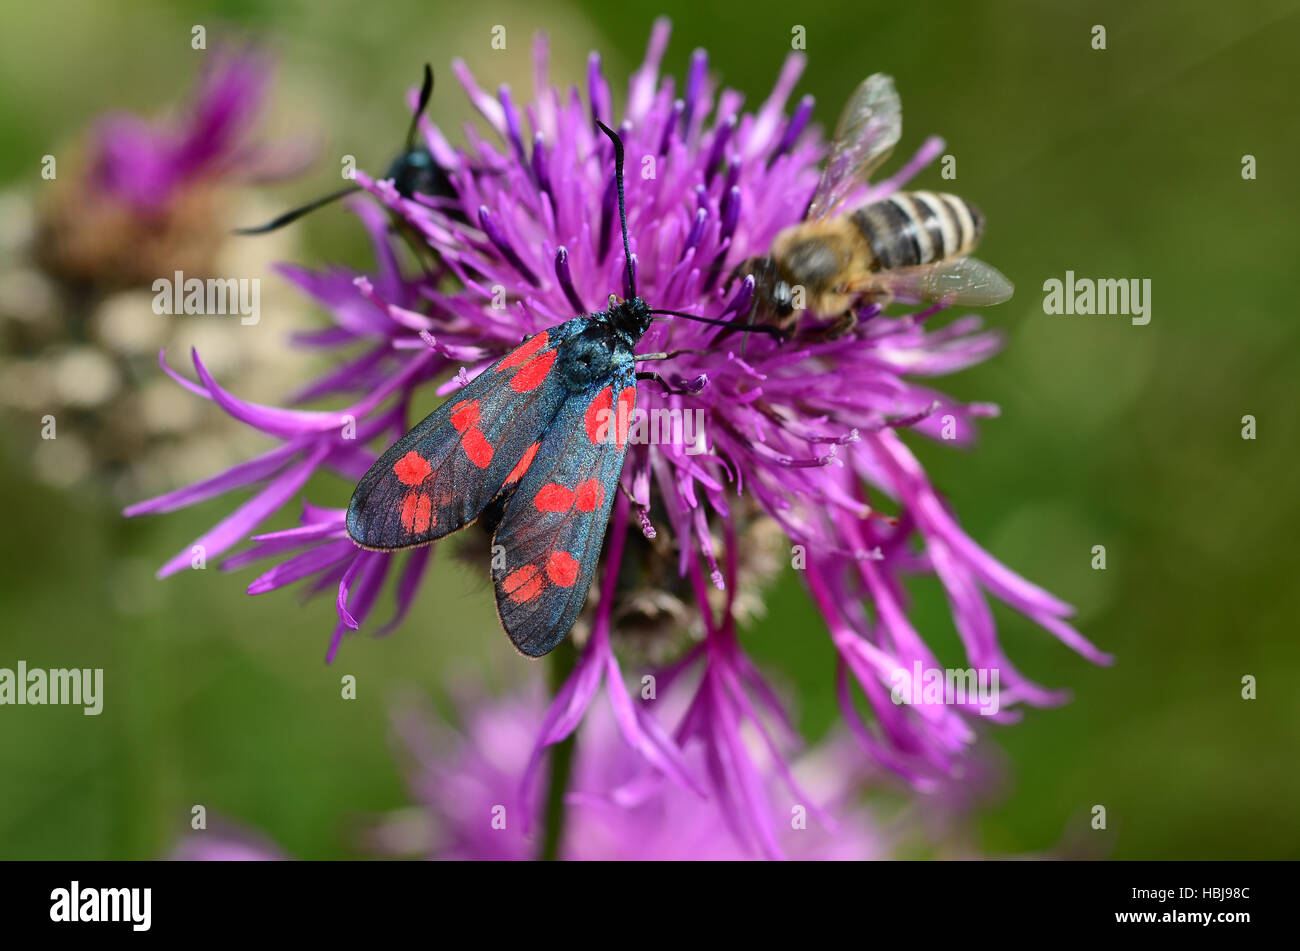 six-spot burnet, butterfly, Stock Photo